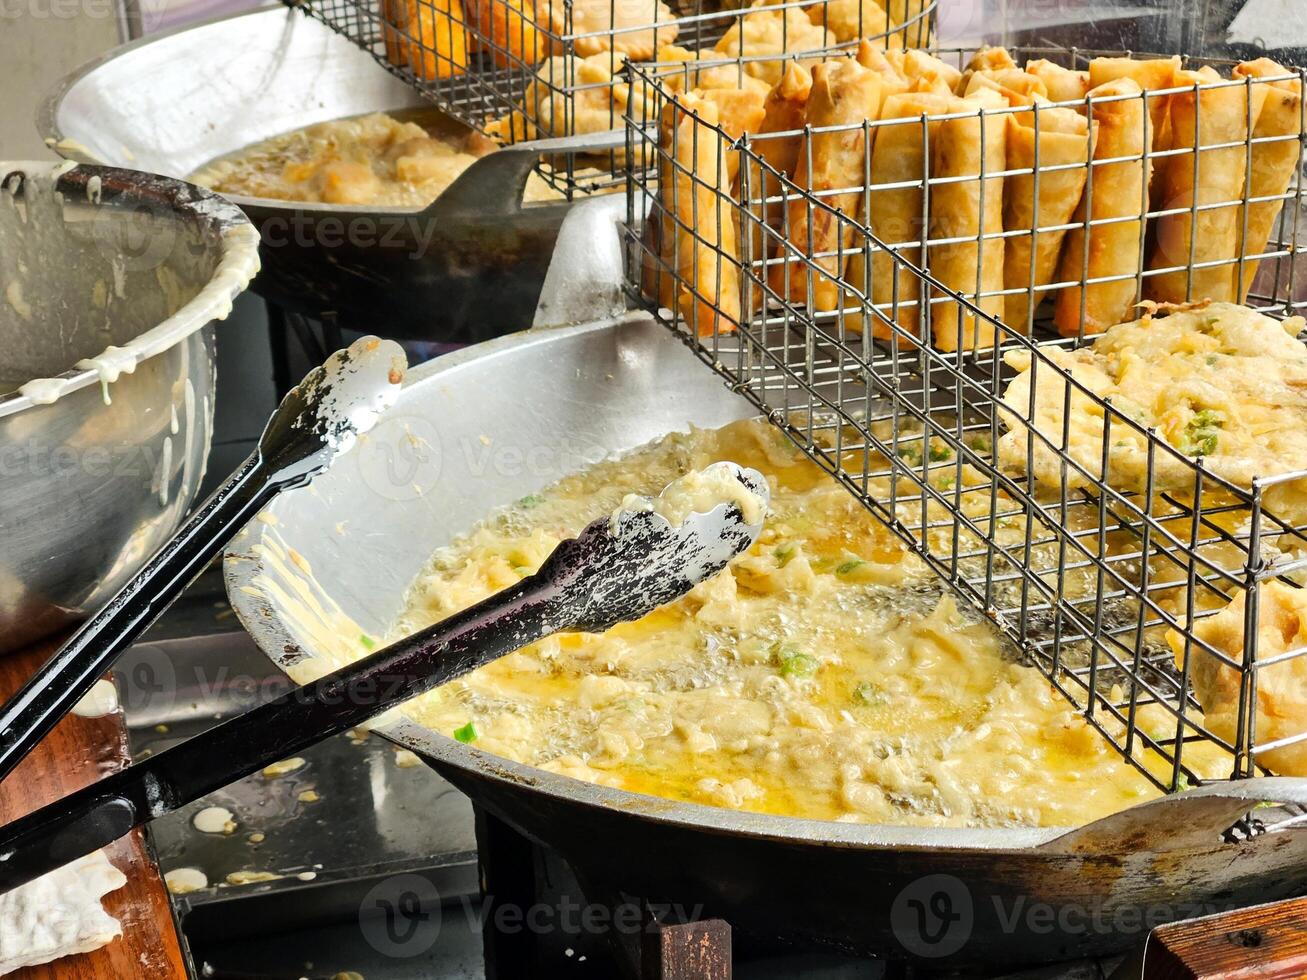 gorengan o frito comida es uno tipo de popular bocadillo en Indonesia, calle comida indonesio popular foto